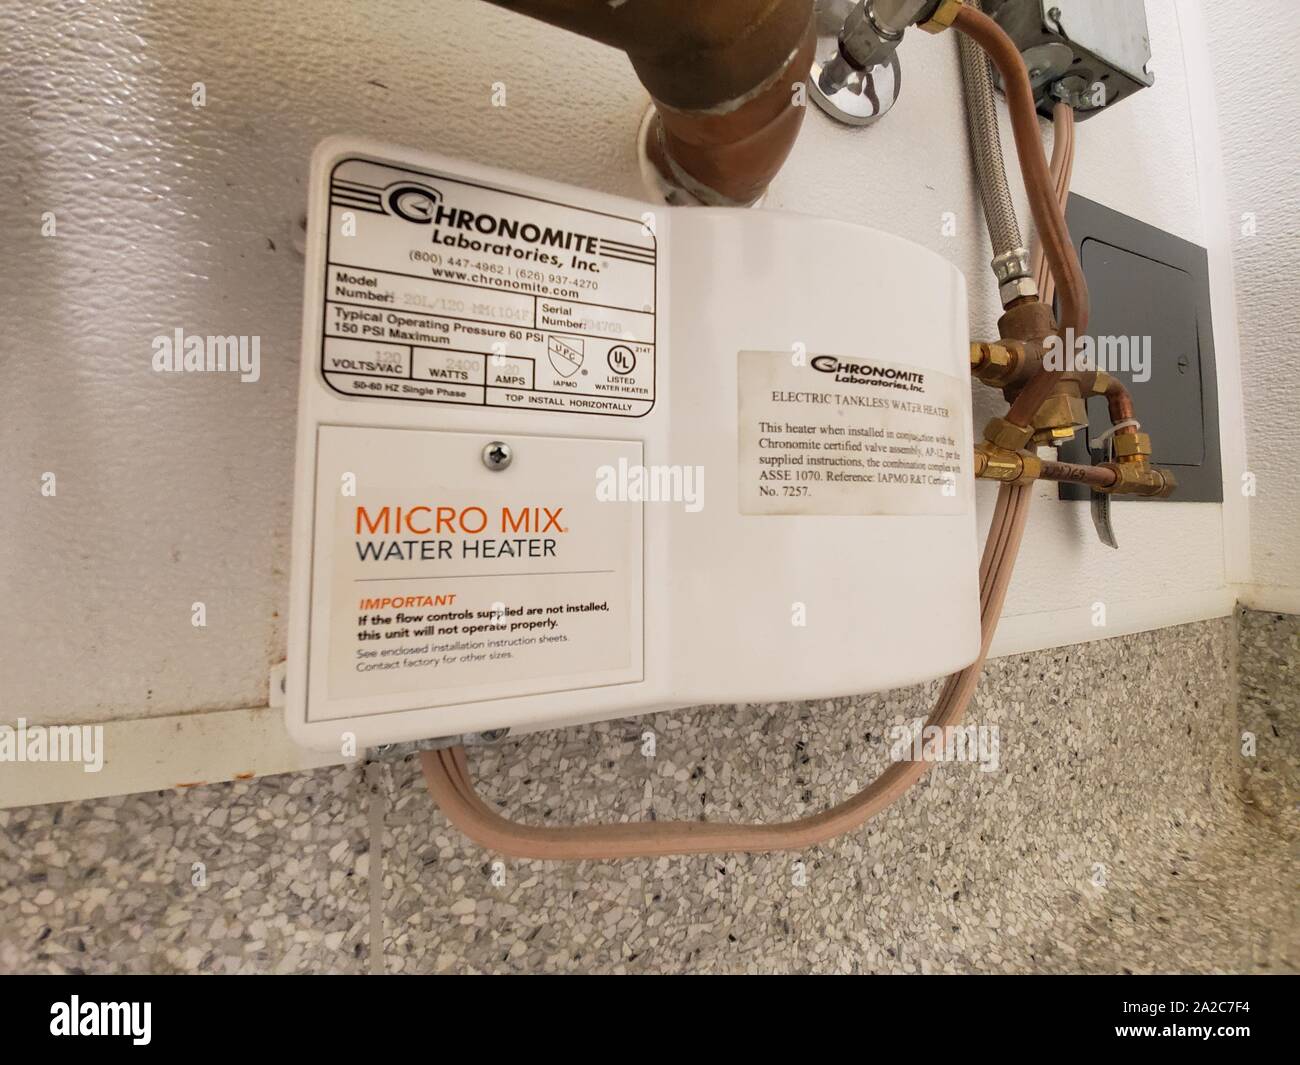 Nahaufnahme der tanklosen Micro-Mix-Wasserheizung, die unter einem Waschbecken in einem kommerziellen Werk in Lafayette, Kalifornien, am 31. Juli 2019 installiert wurde. Mikrotanklose Wassererhitzer werden in Kalifornien häufig für kommerzielle Installationen verwendet, um den Energieverbrauch zu reduzieren. () Stockfoto